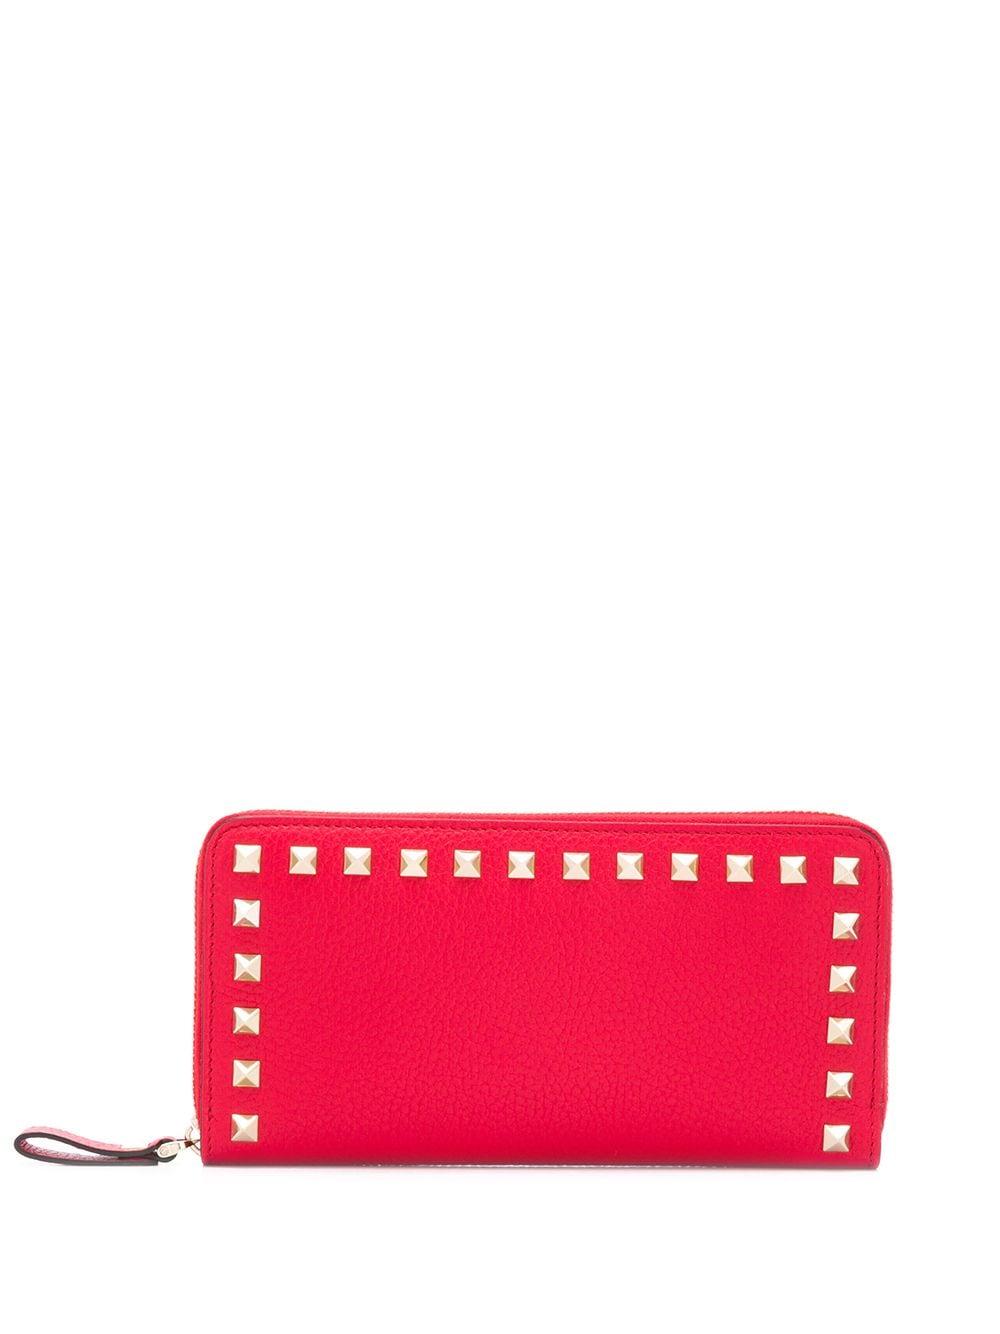 Valentino Leather Valentino Garavani Rockstud Zip Around Wallet in Red ...